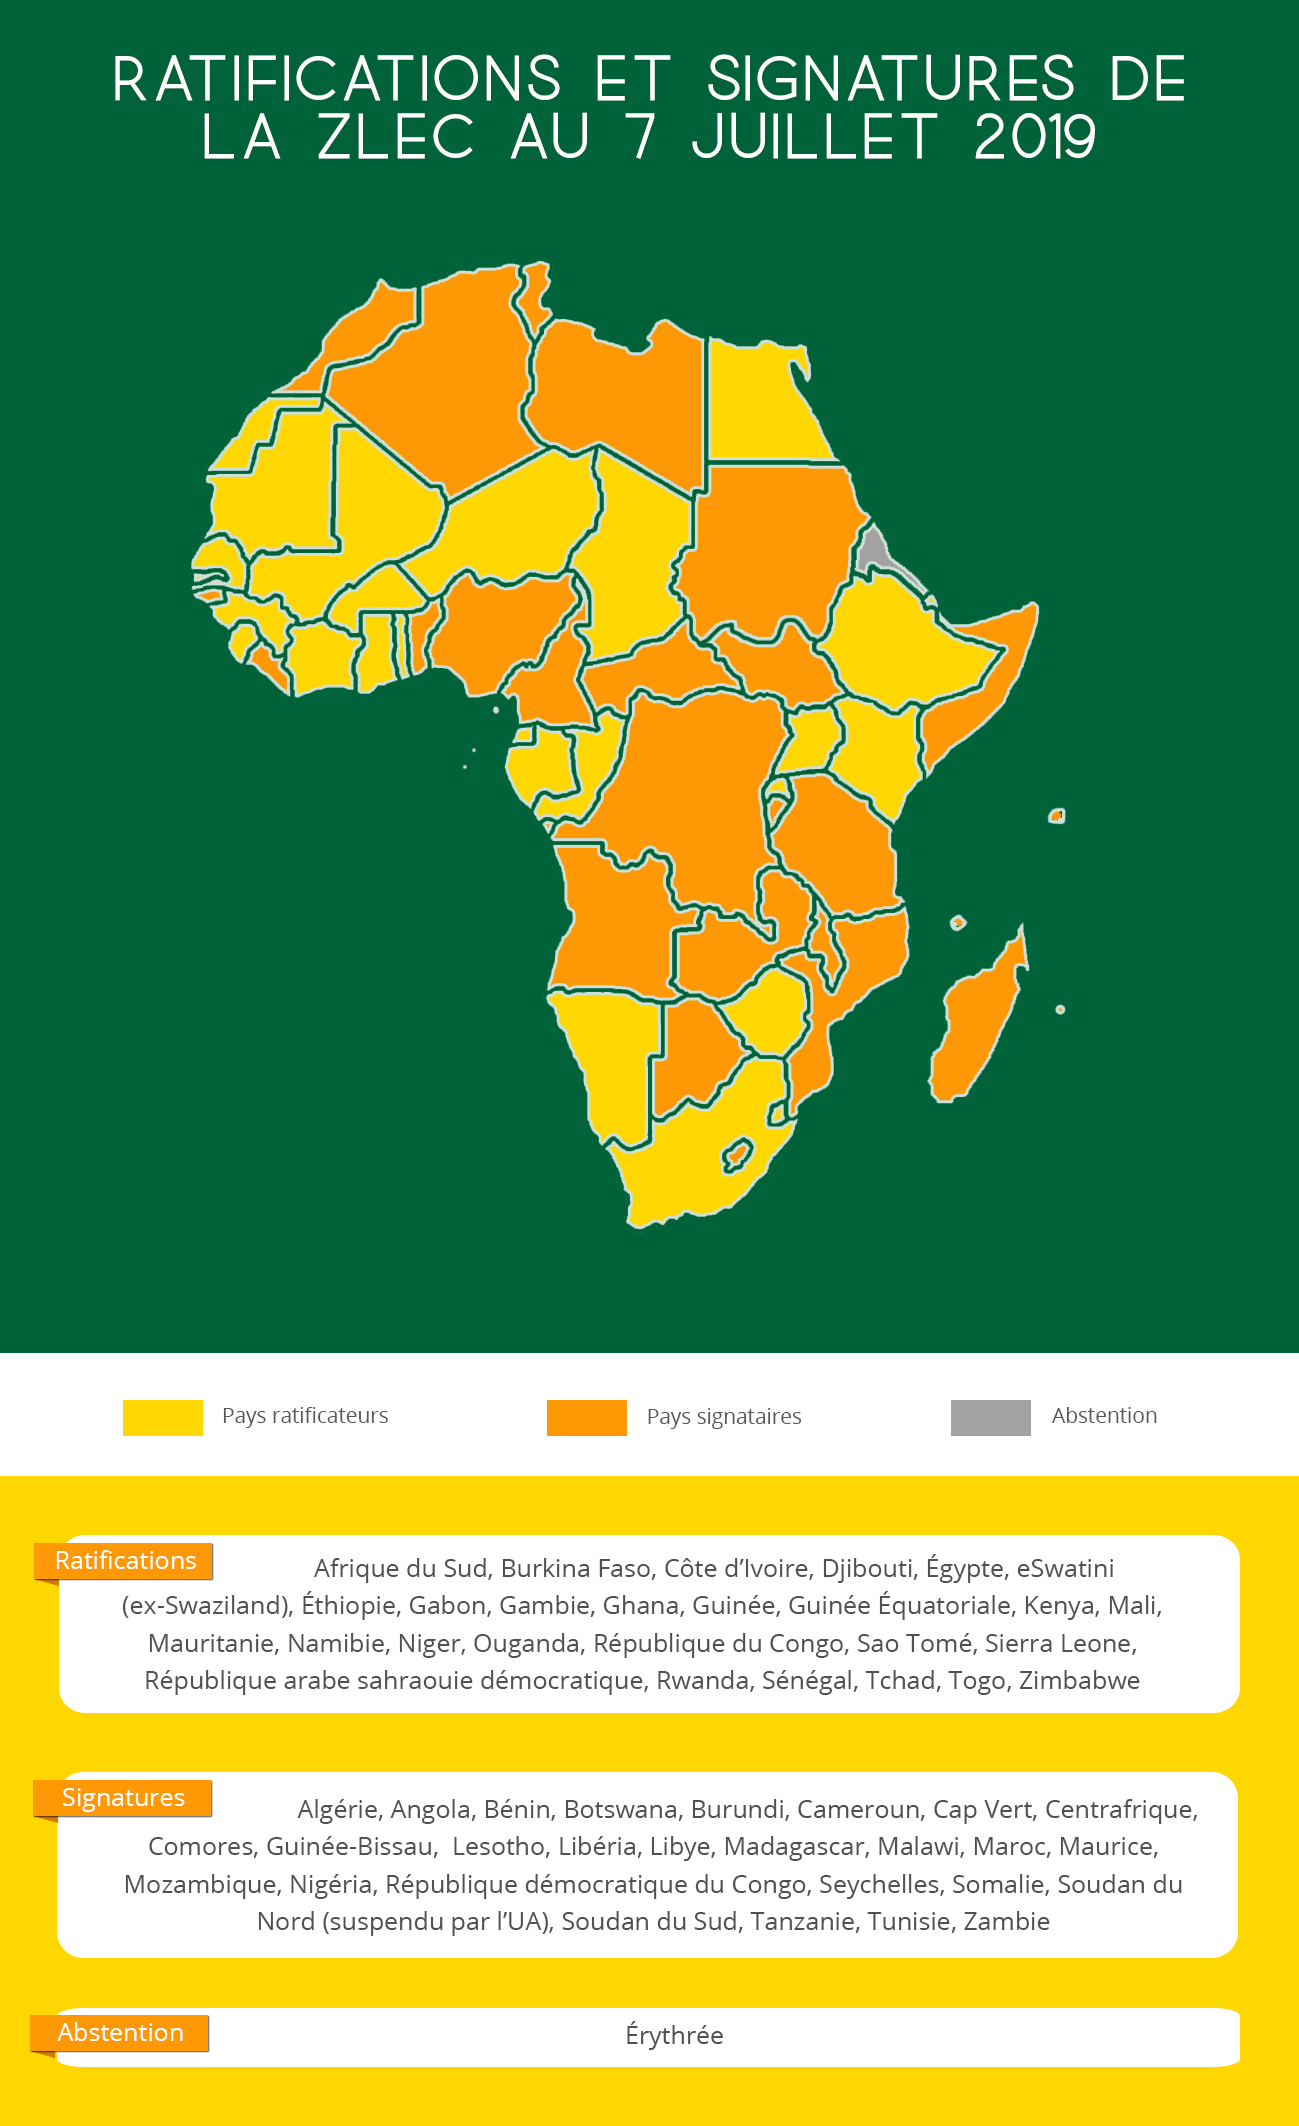 Une carte et un résumé sur les pays africains ayant signé et ratifié la ZLEC